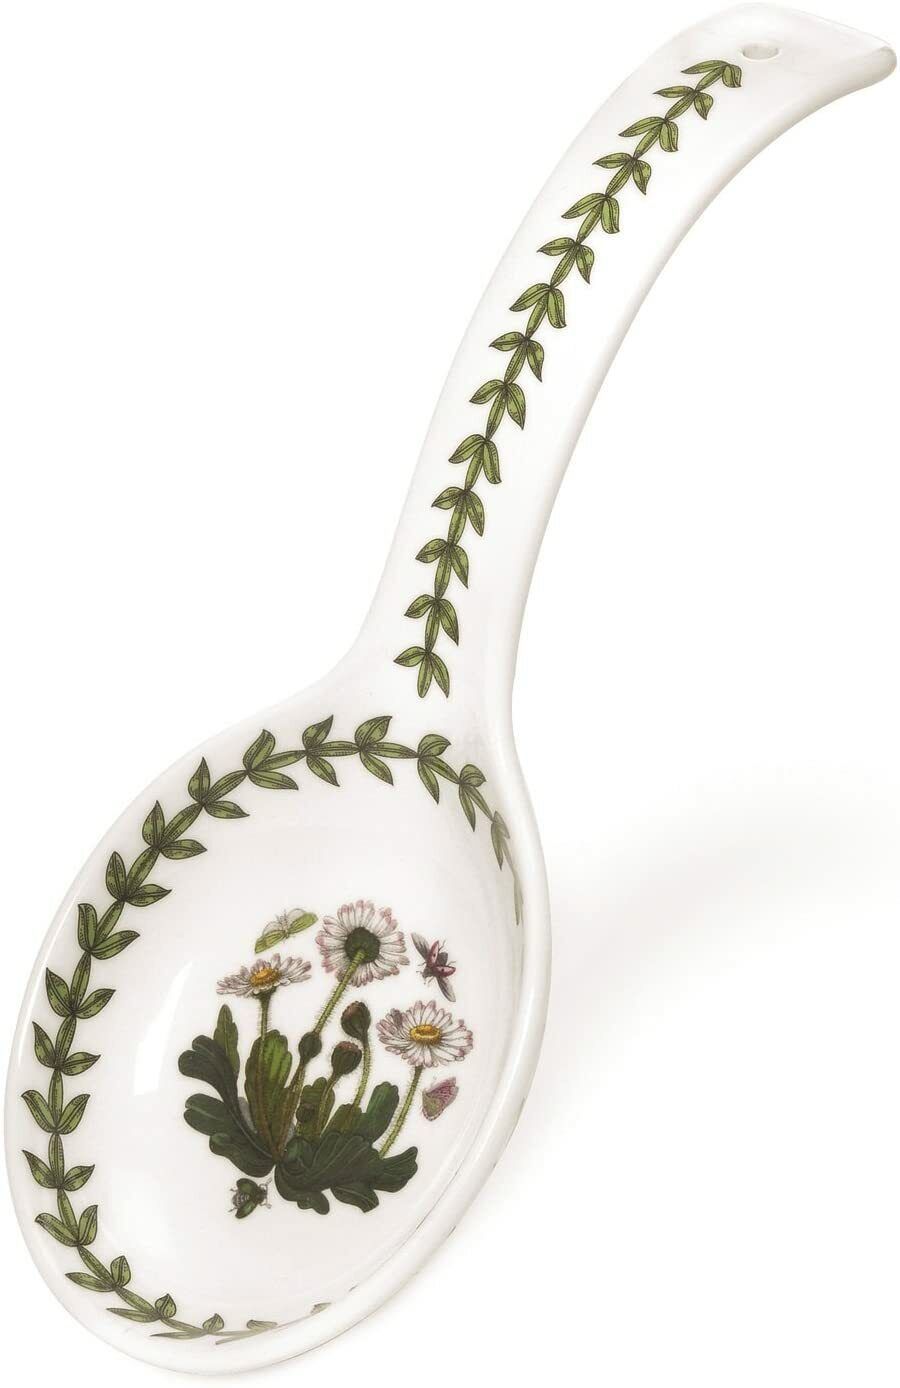 Primary image for Portmeirion Botanic Garden 8.75" Spoon Rest, Fine Porcelain